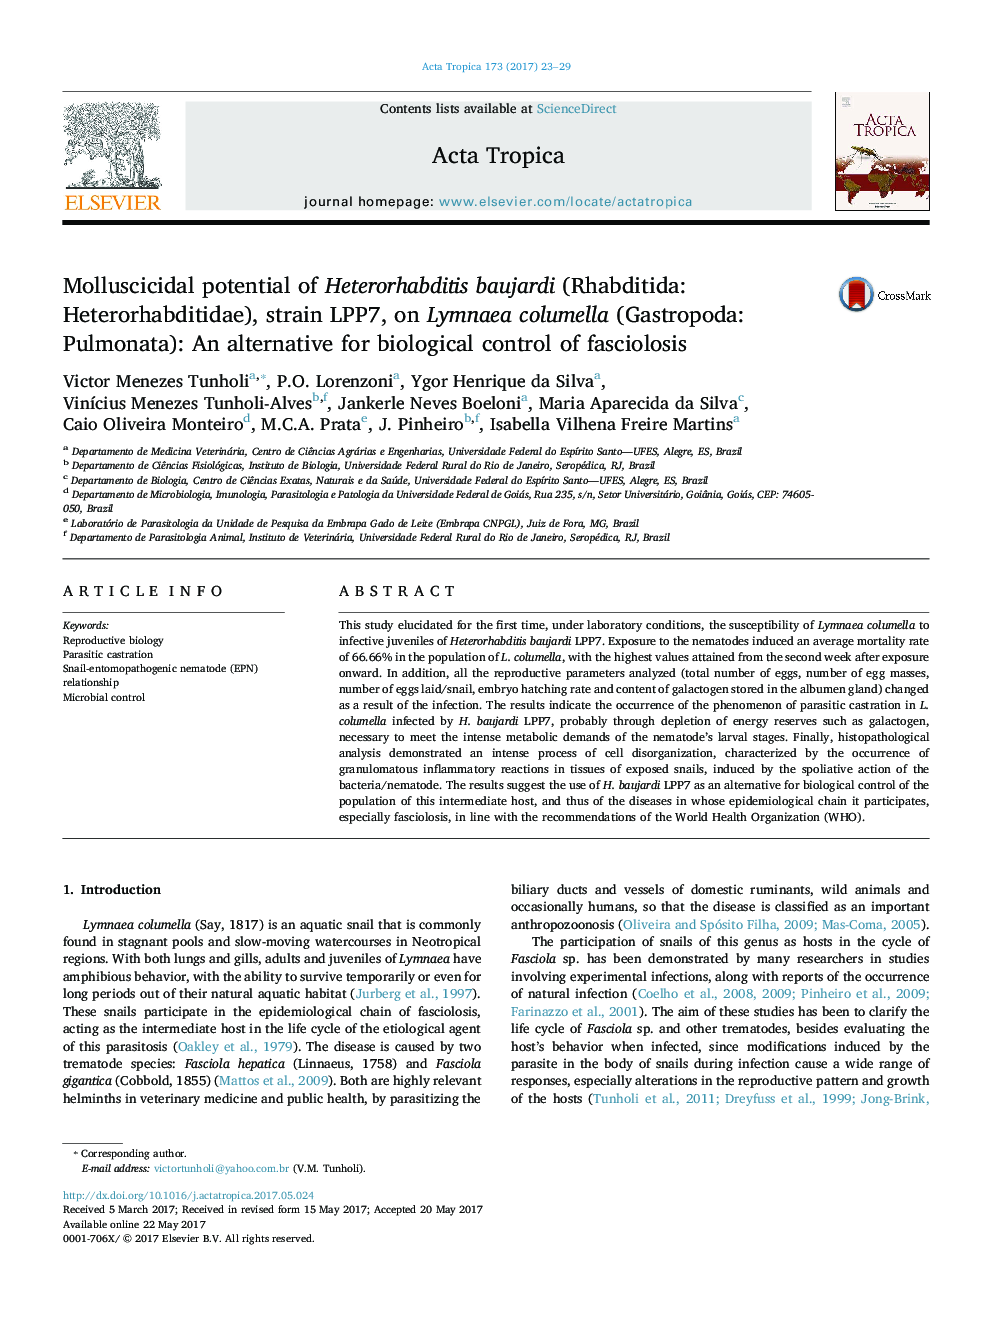 Molluscicidal potential of Heterorhabditis baujardi (Rhabditida: Heterorhabditidae), strain LPP7, on Lymnaea columella (Gastropoda: Pulmonata): An alternative for biological control of fasciolosis